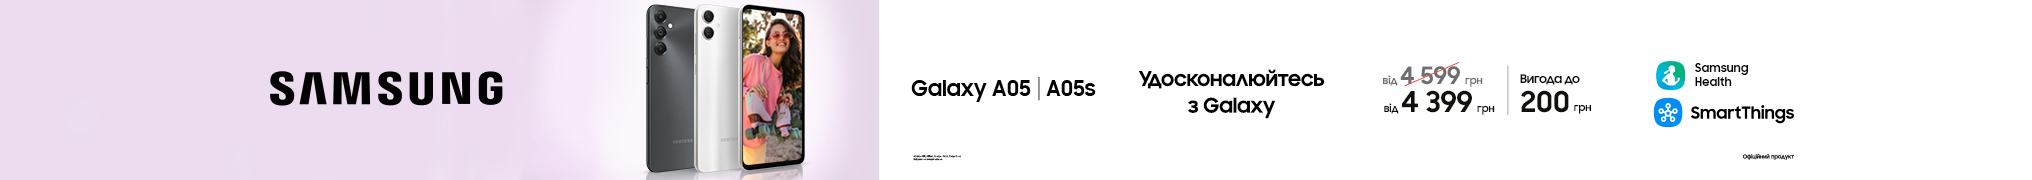 Удосконалюйся з Galaxy 05/05S